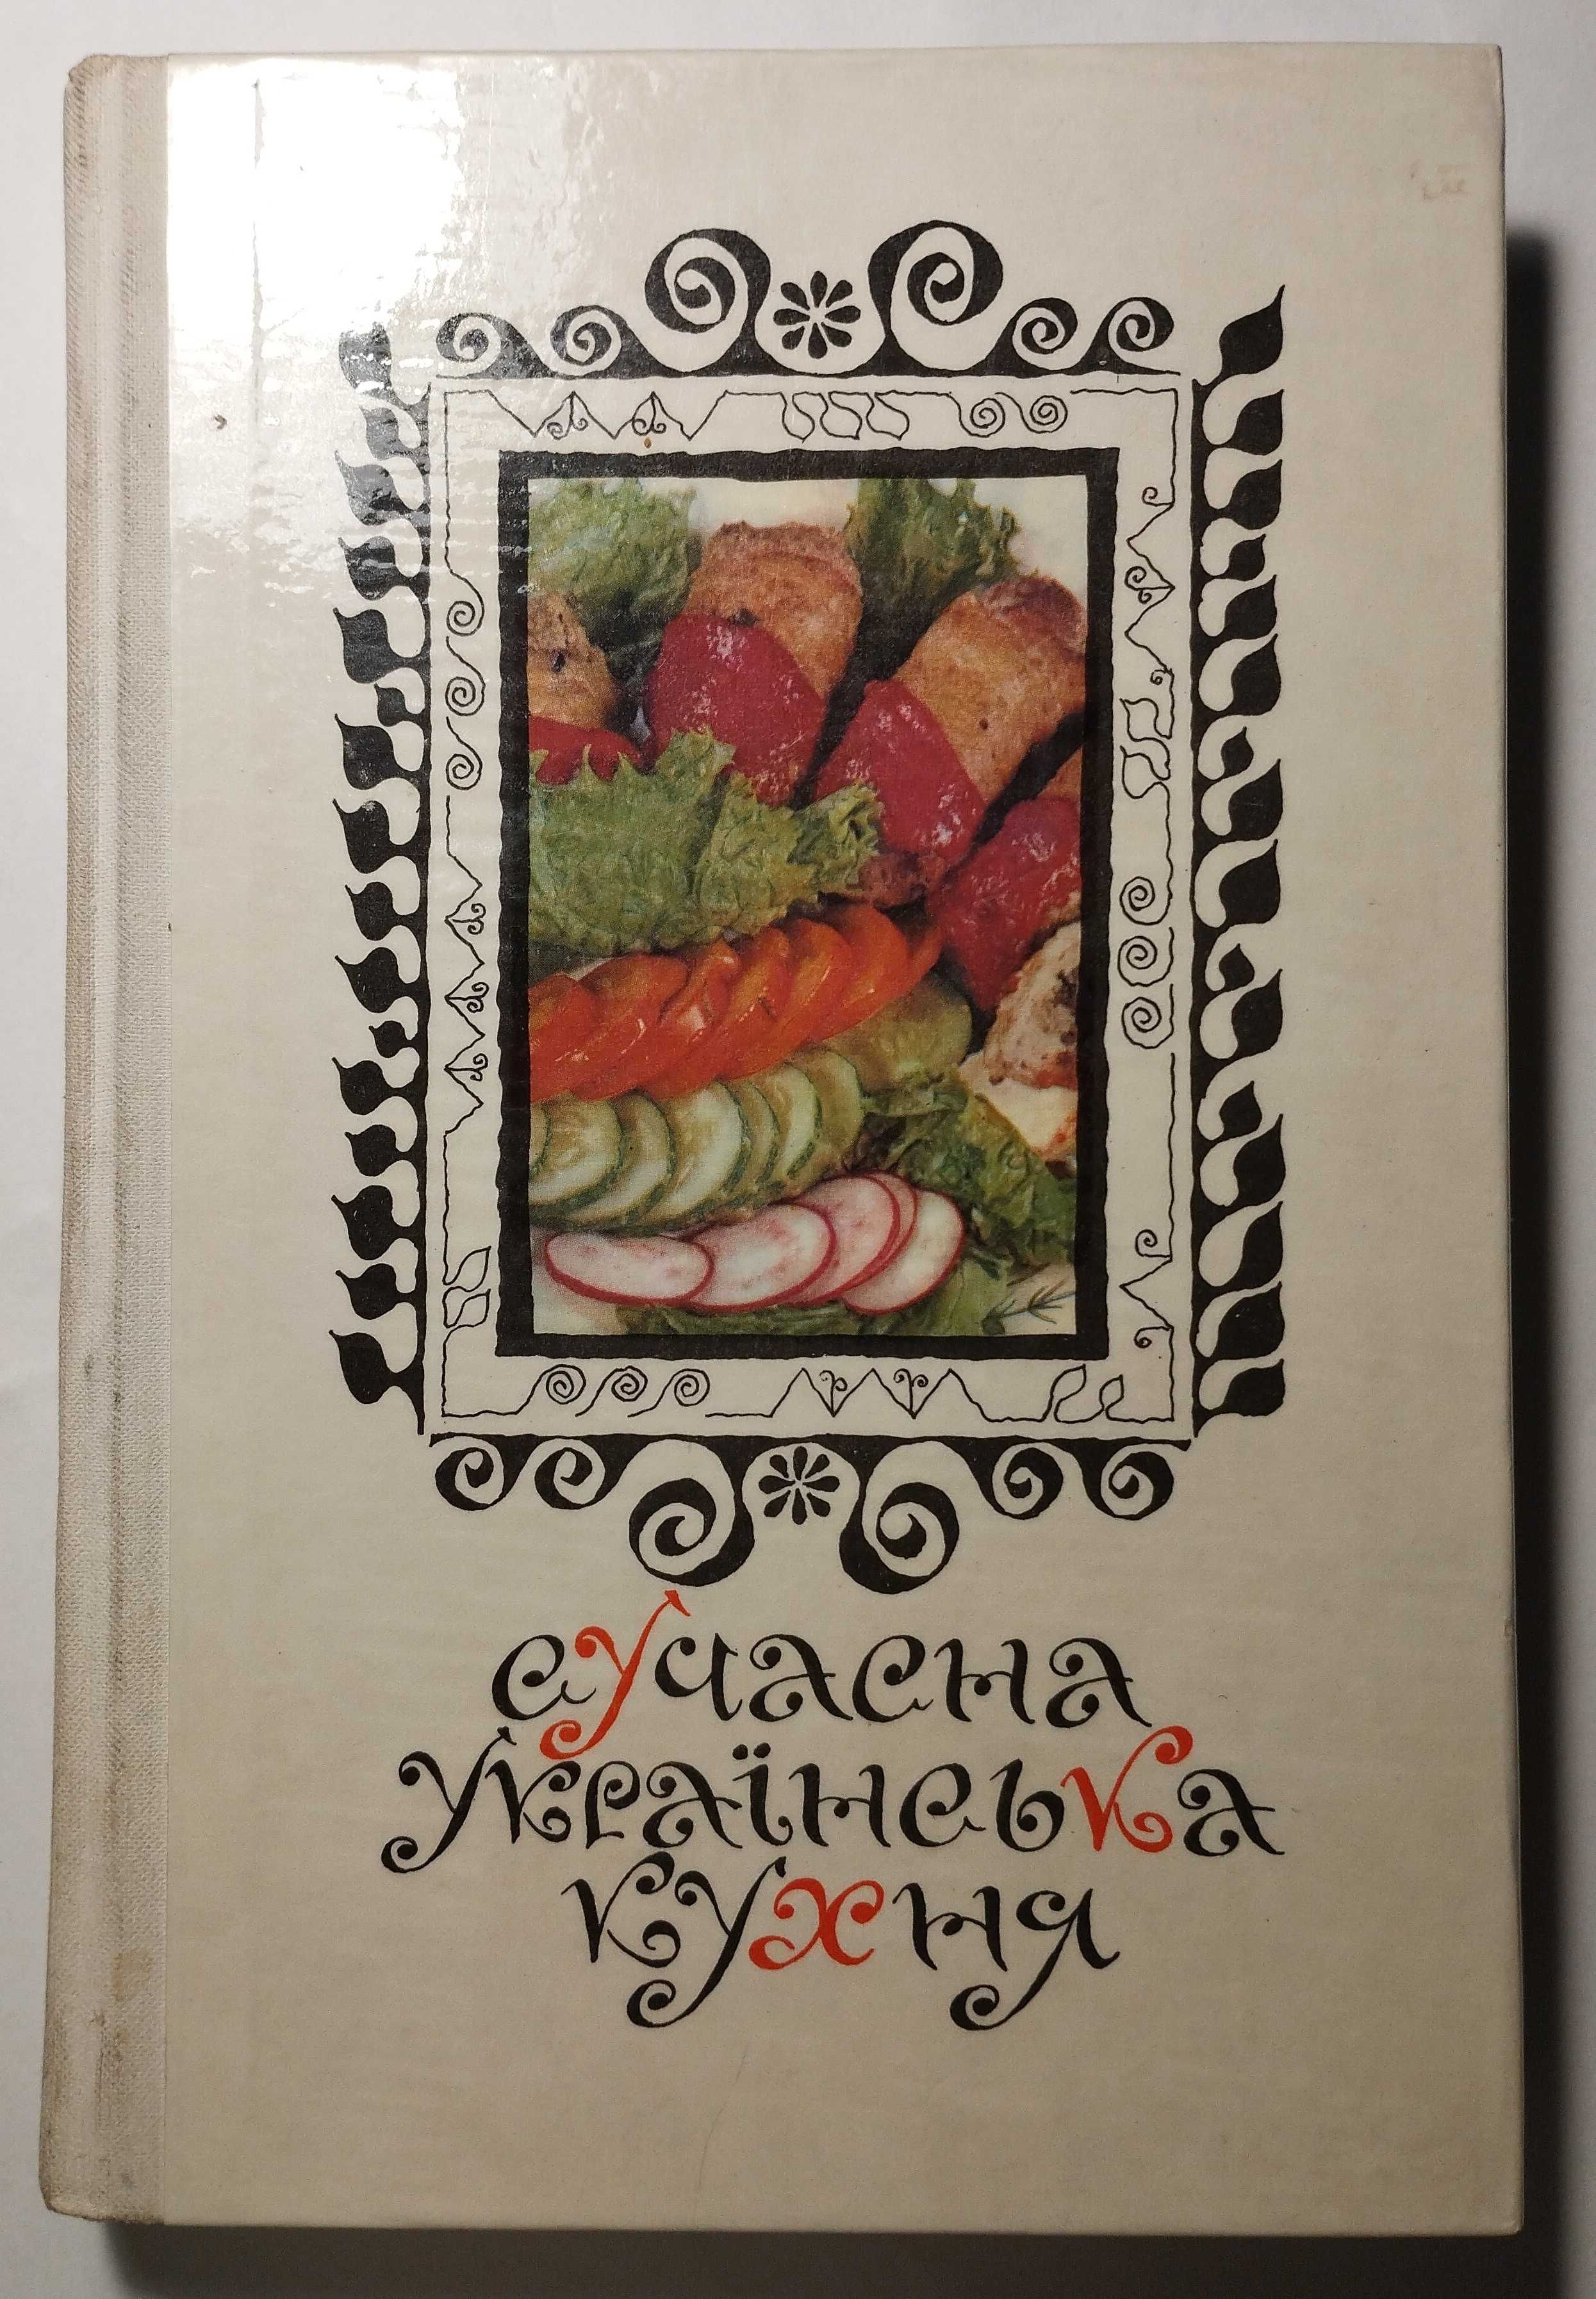 Сучасна Українська Кухня, Київ 1974 рік